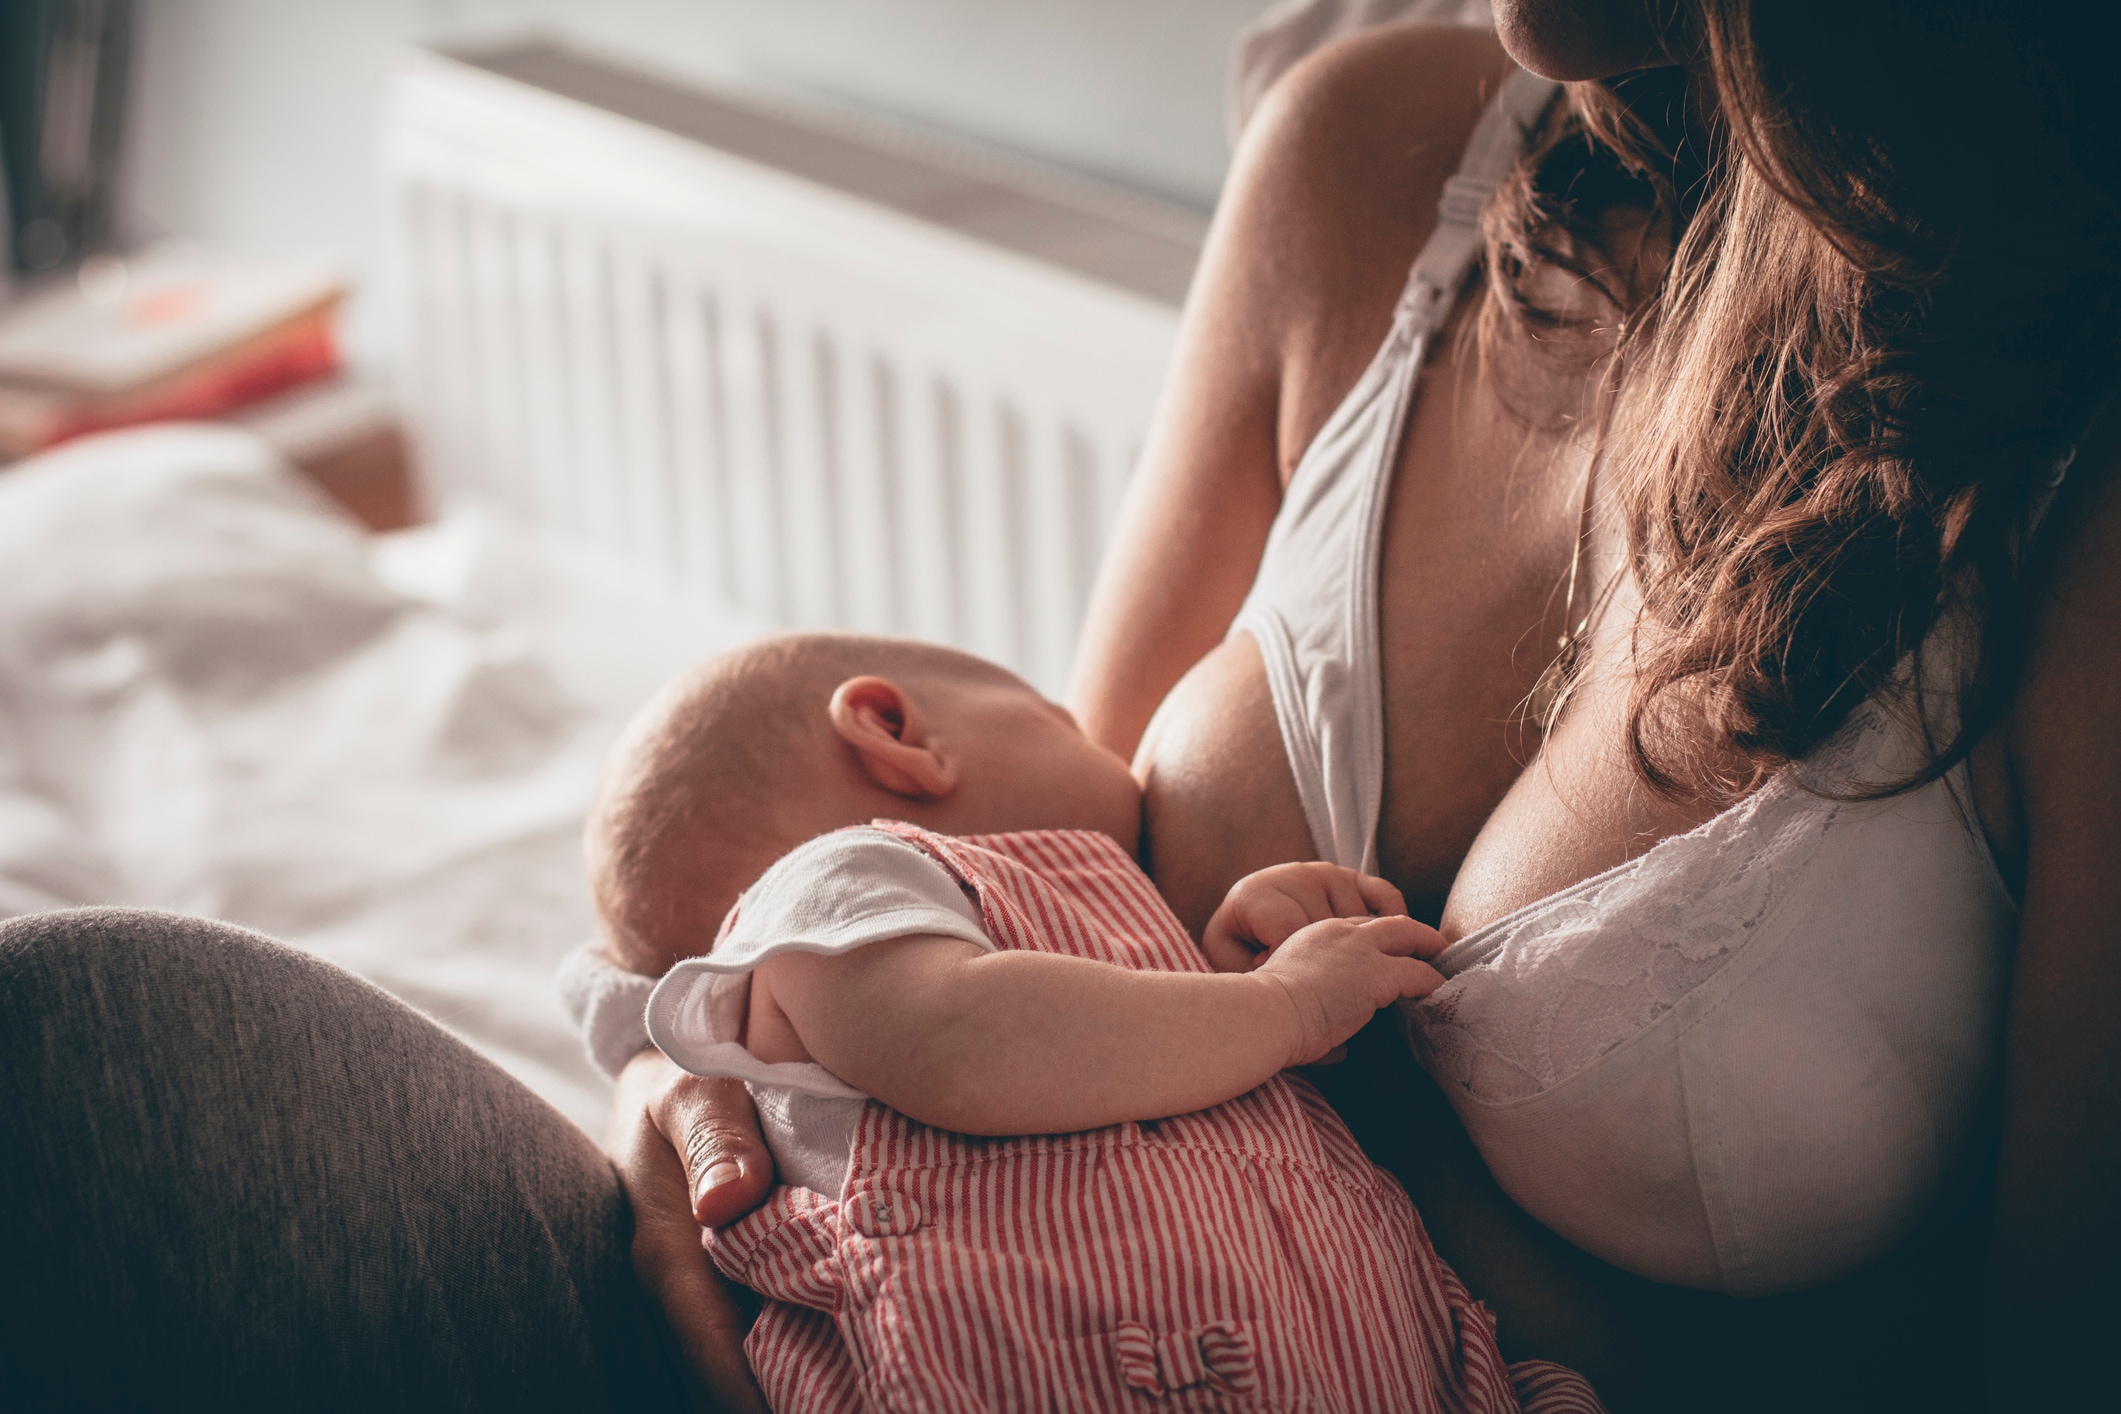 5 Best Nursing Tanks for Breastfeeding in 2023 – Kindred Bravely